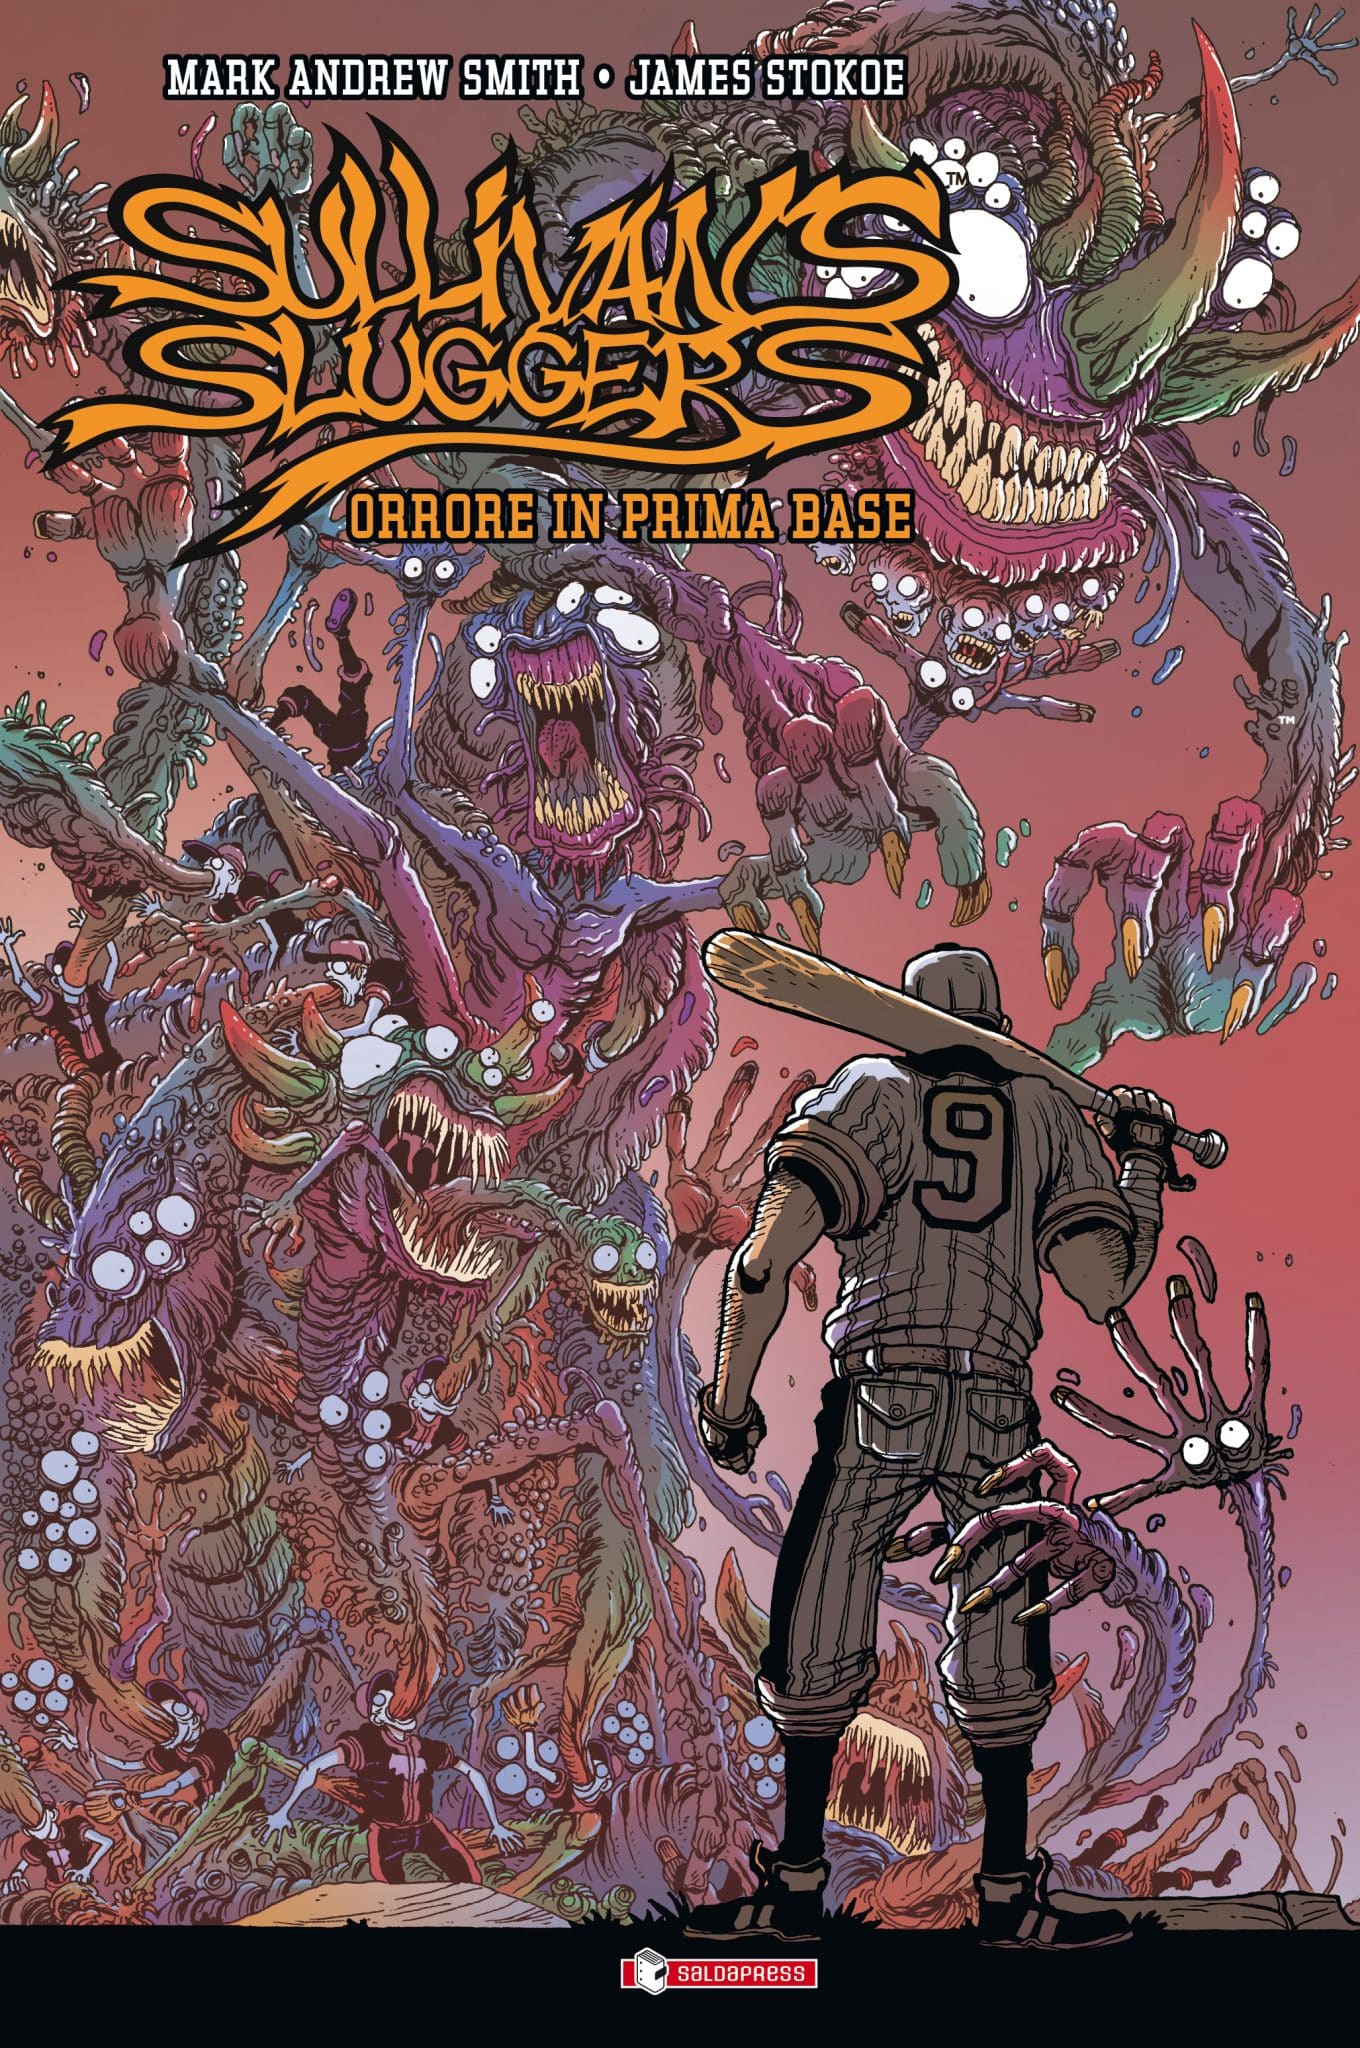 Sullivan's Sluggers cover